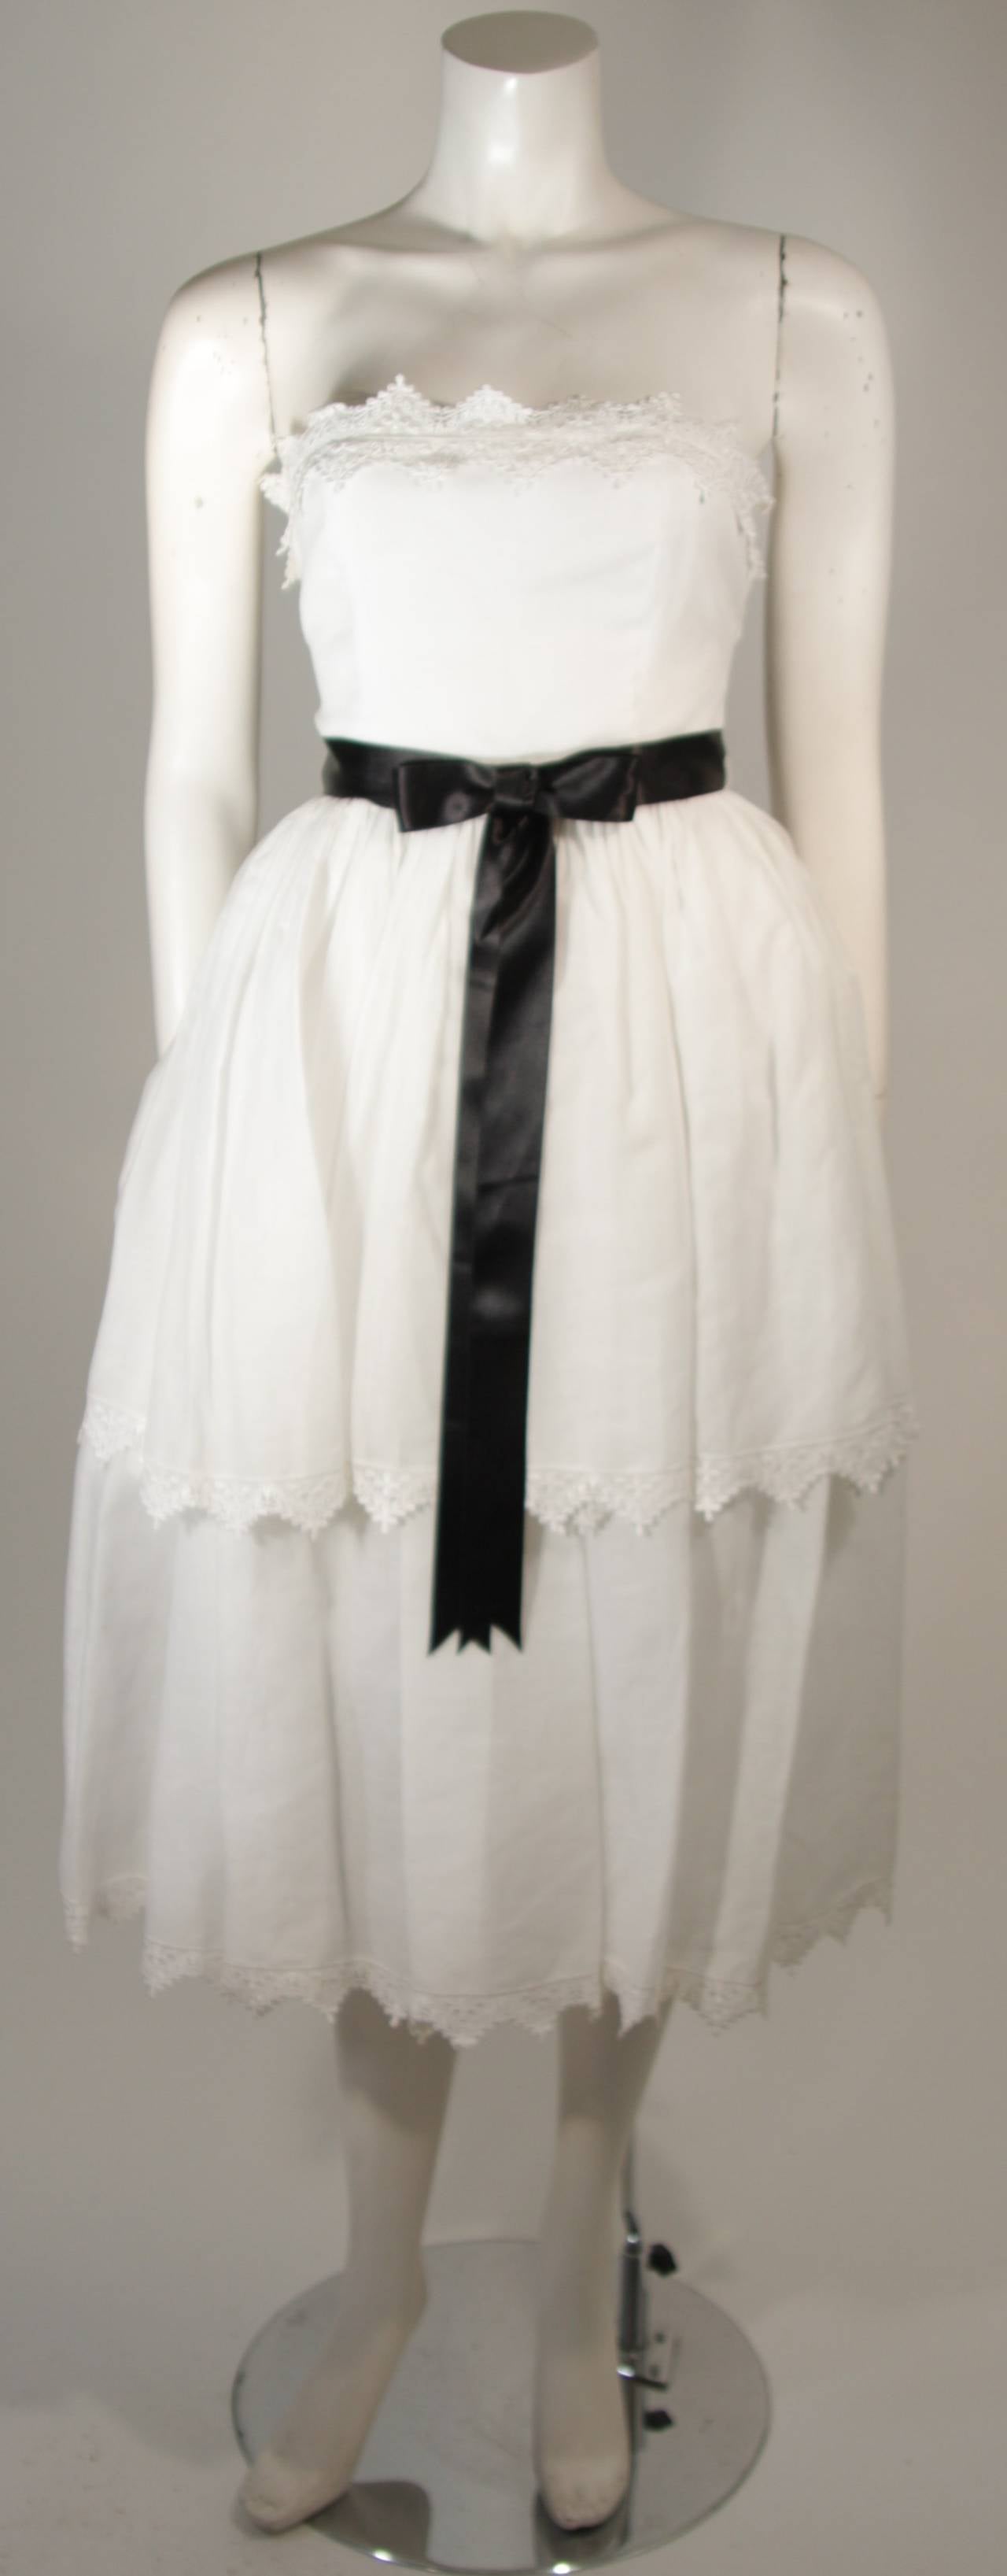 Dieses Kleid von Albert Capraro besteht aus weißer Baumwolle und hat einen Spitzenbesatz. Es gibt einen Reißverschluss in der Mitte des Rückens. In ausgezeichnetem Zustand. 

**Bitte vergleichen Sie die Maße für Ihre persönliche Genauigkeit. Die